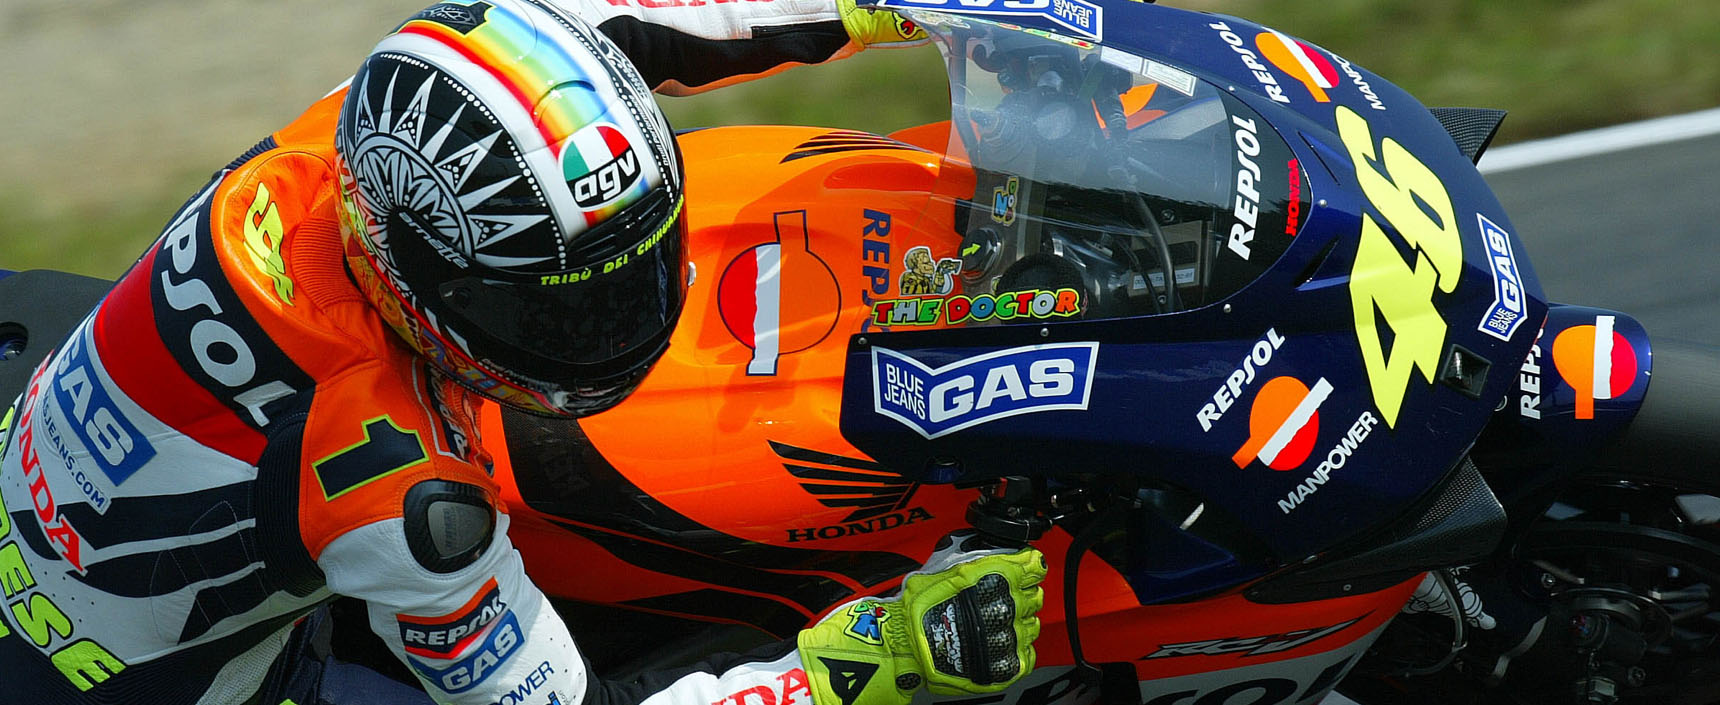 El italiano Rossi consiguió su primer mundial en Repsol Honda que en 2002 ganó por primera vez la triple corona piloto, equipo, constructores